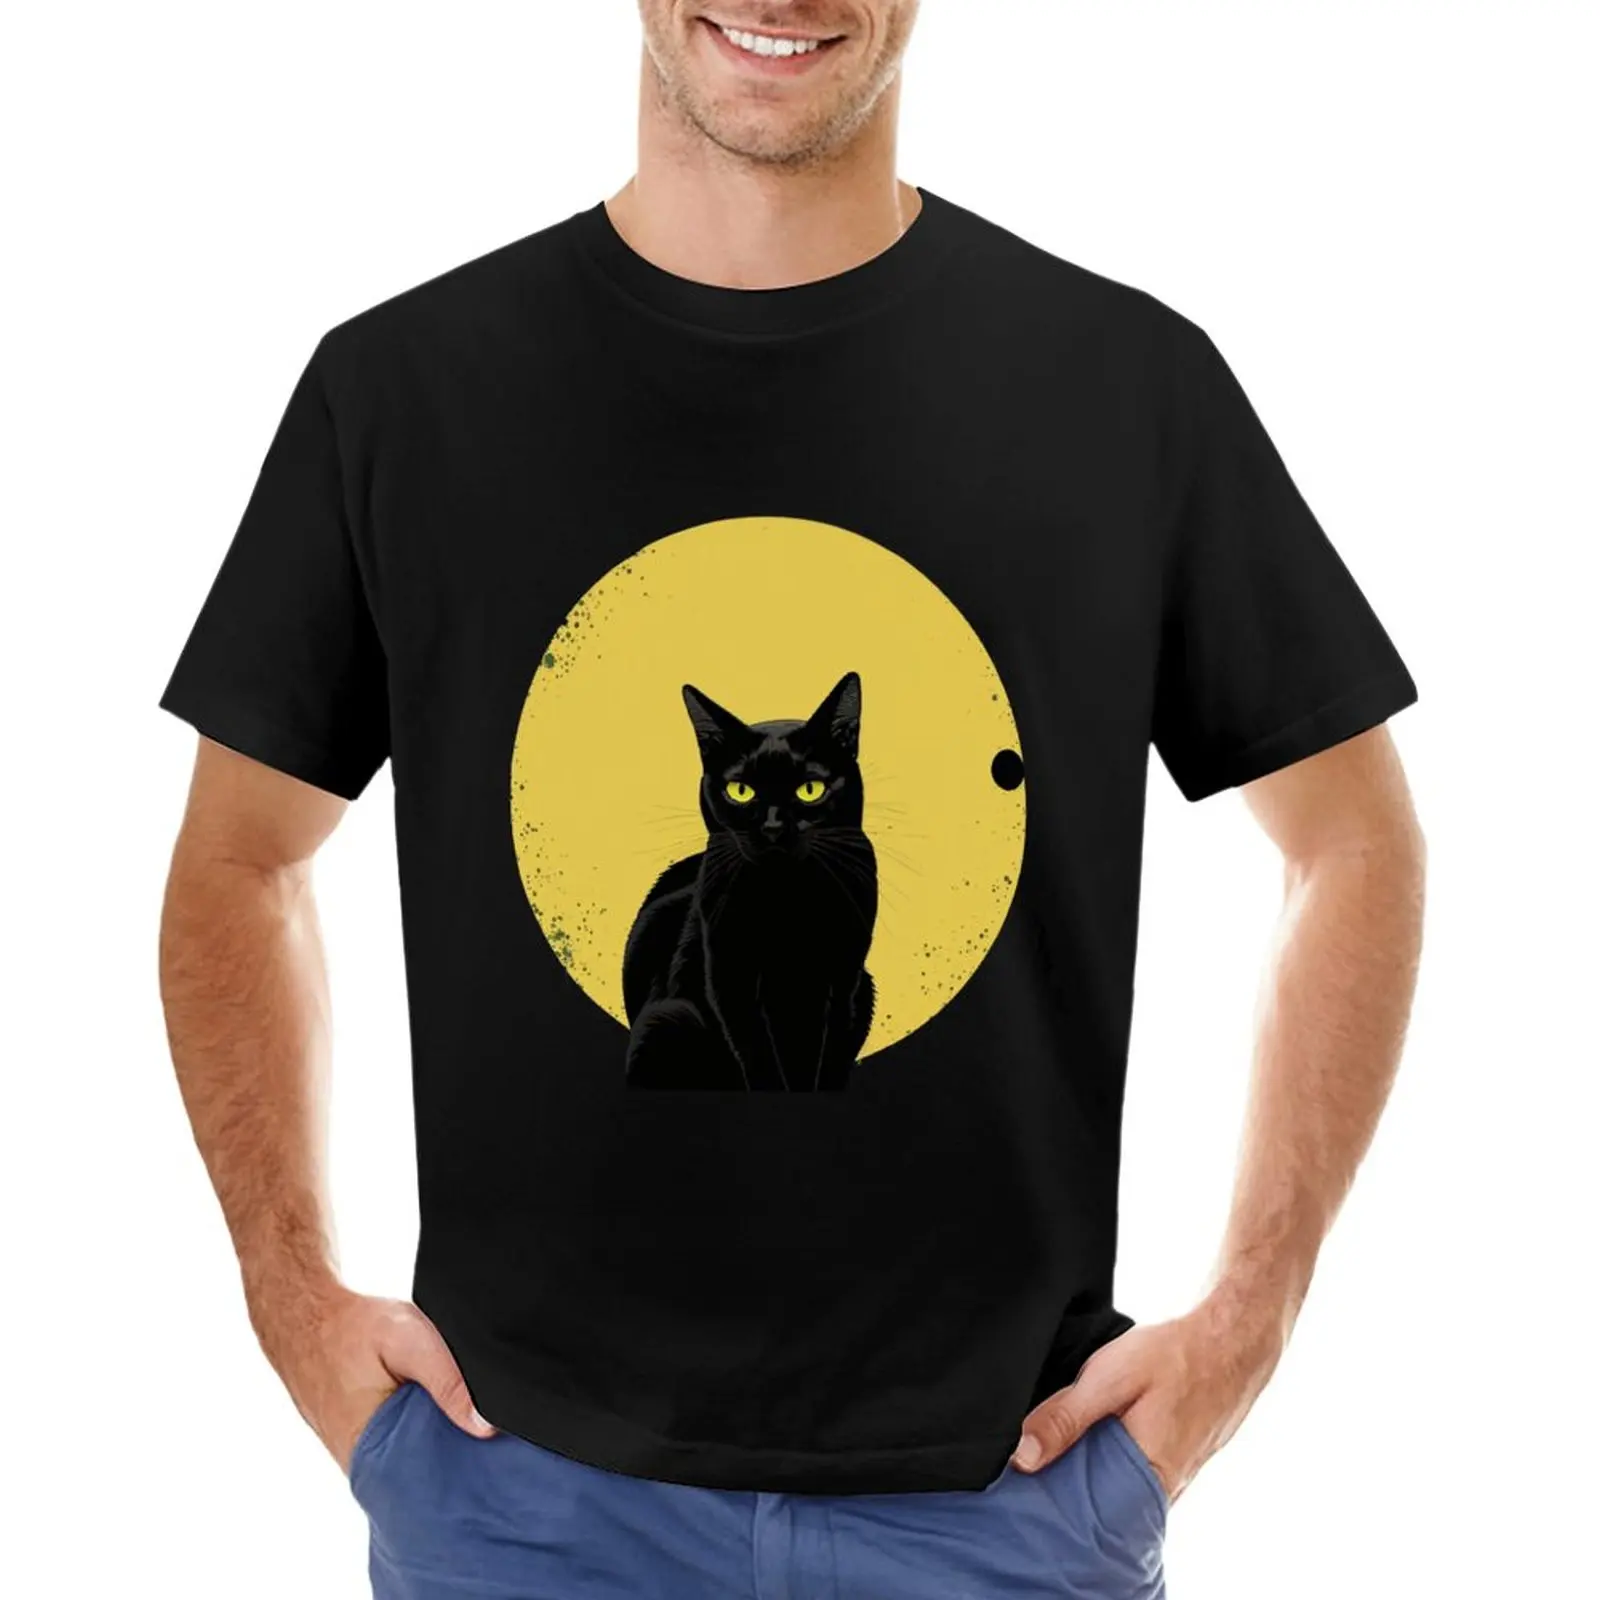 Футболка Cat Daddy Black Cat в винтажном стиле восьмидесятых, одежда из аниме, великолепная футболка, мужские футболки для больших и высоких - 0